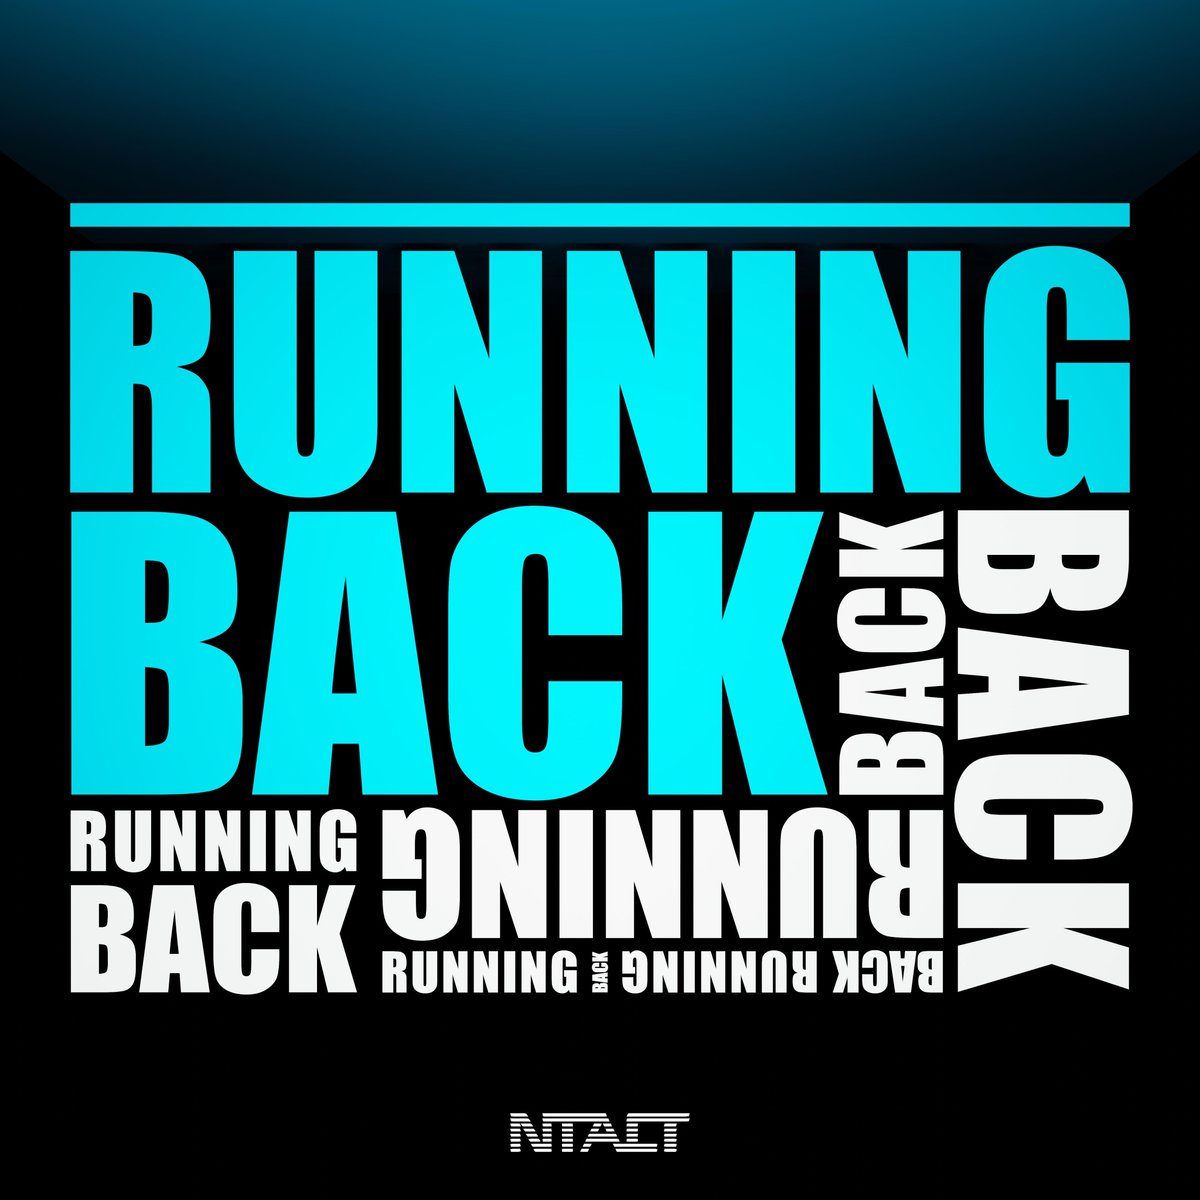 🔥 Running Back 🔥 ❗ OUT NOW ❗ 🤩

➡➡➡ lnk.site/running-back

#releasefriday #releaseday #newrelease #newmusic #newsong #newmusic #newmusicalert #edm #edmmusic